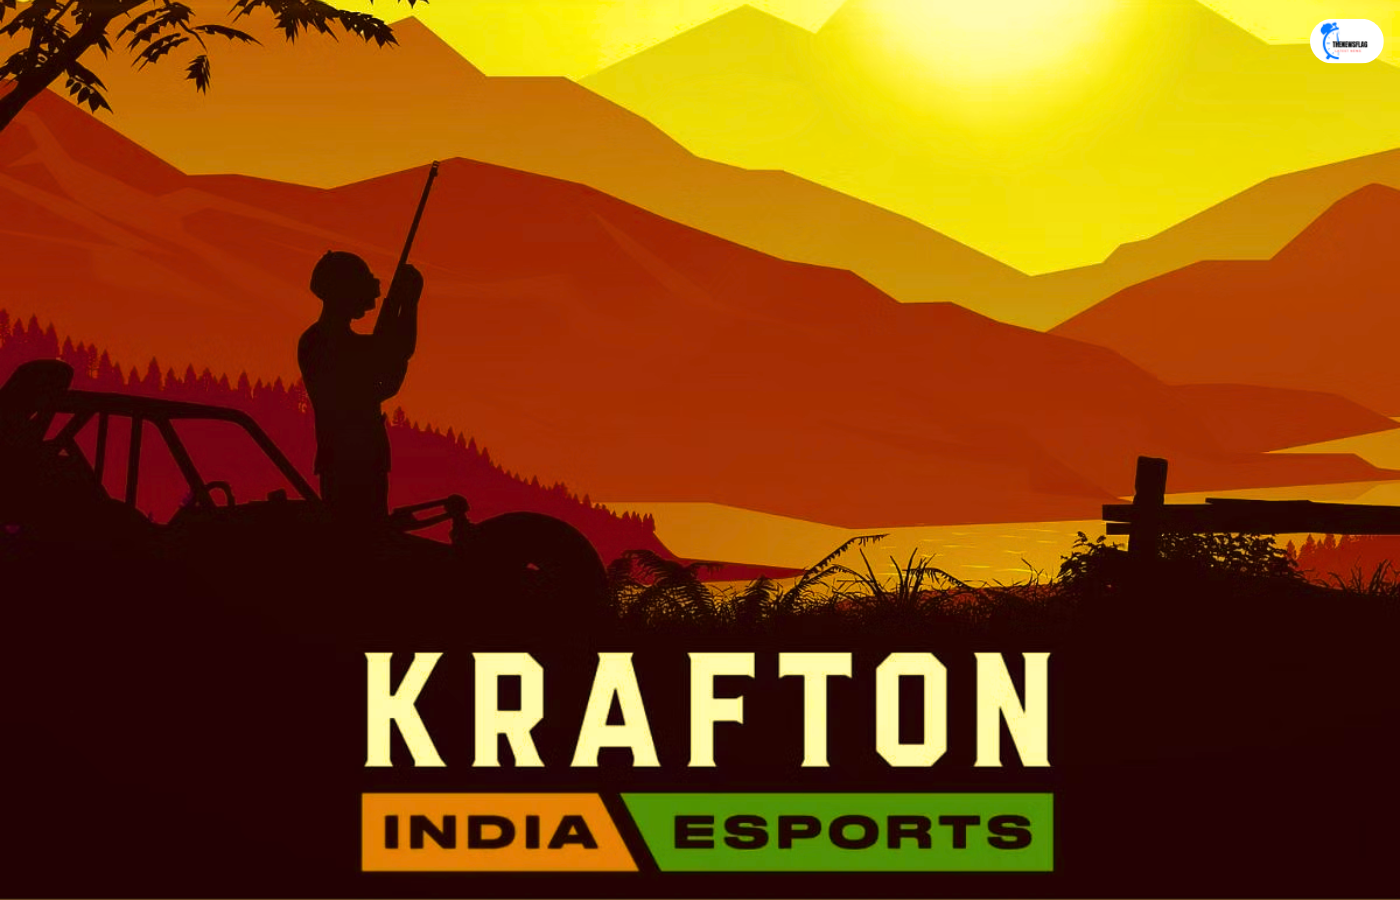 Krafton India Esports